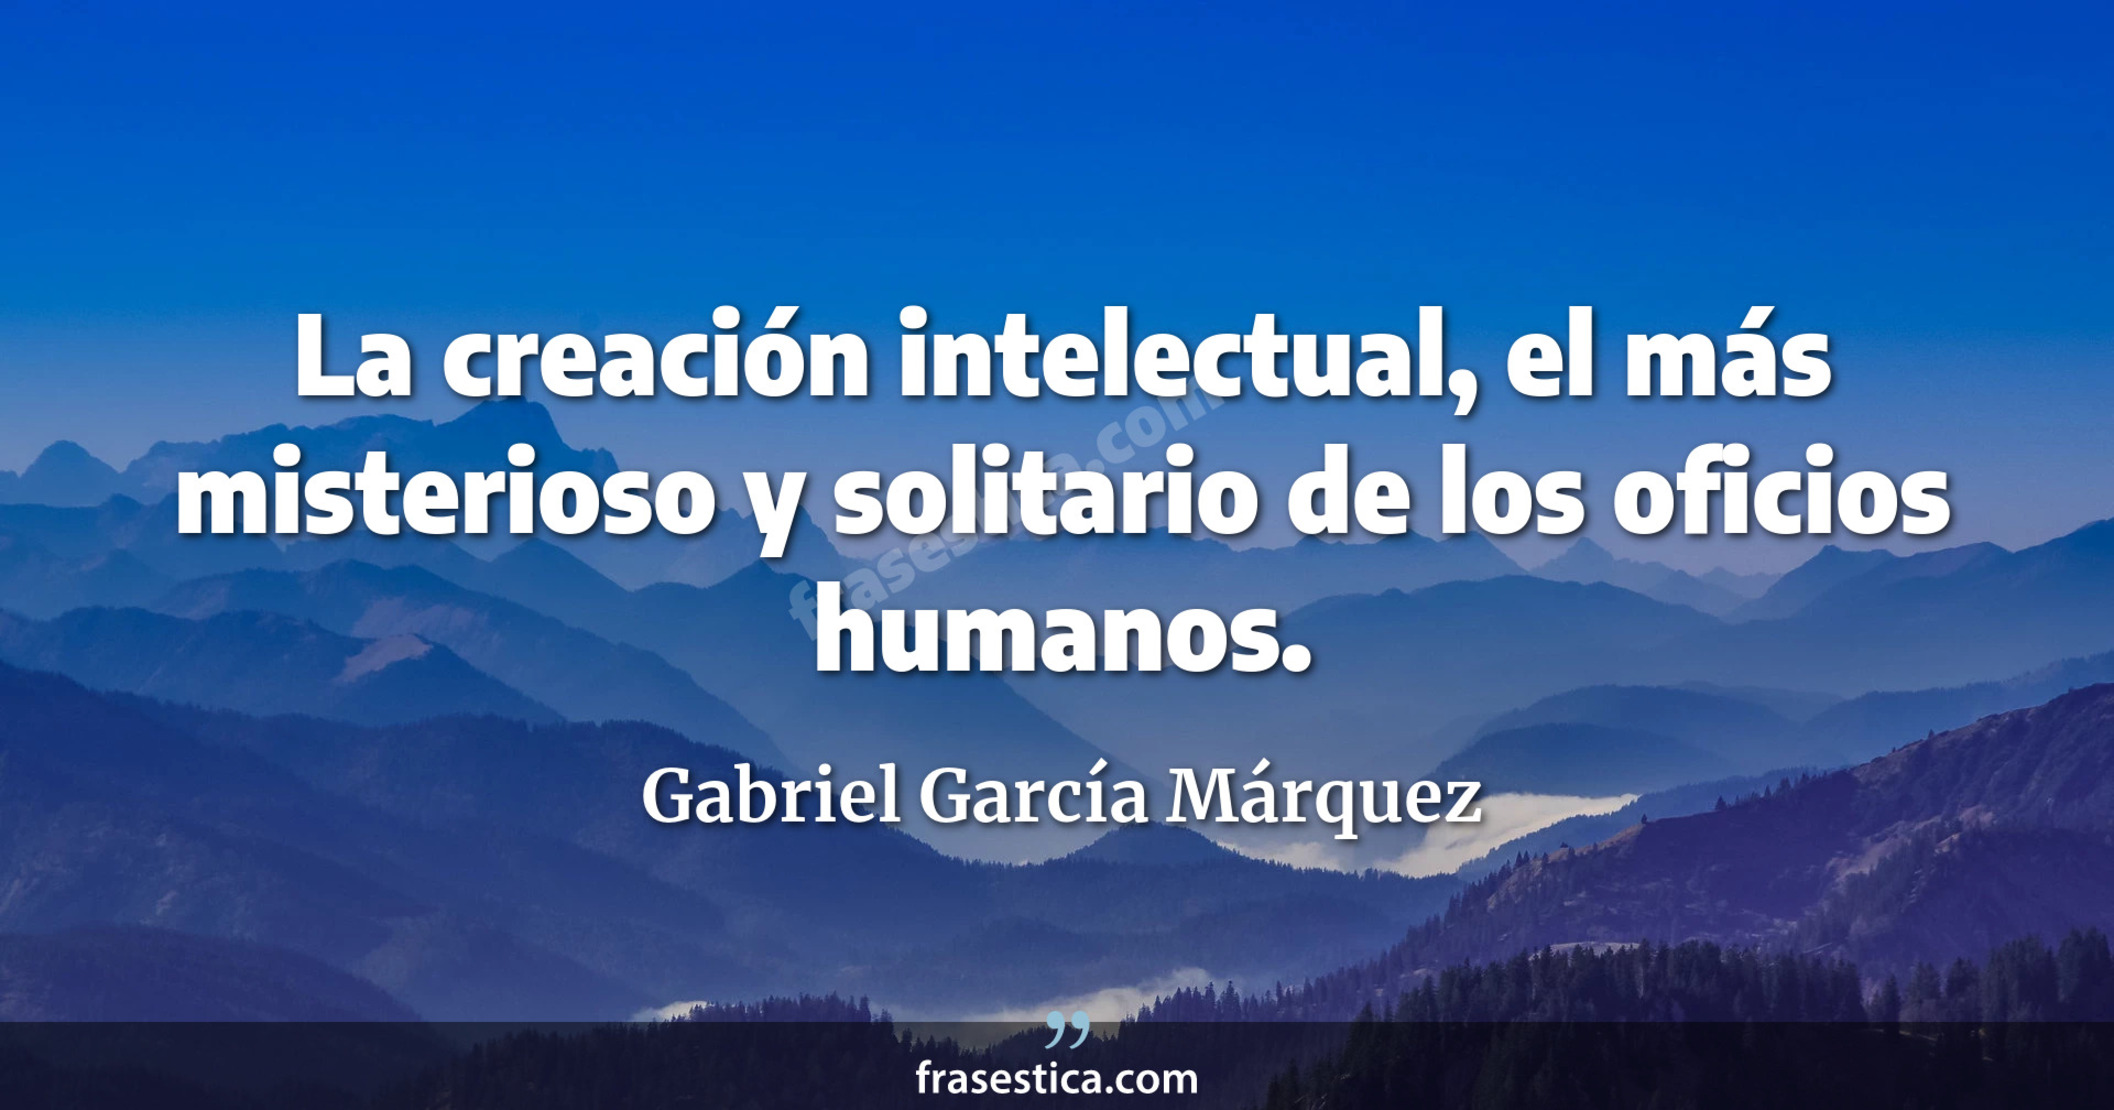 La creación intelectual, el más misterioso y solitario de los oficios humanos. - Gabriel García Márquez